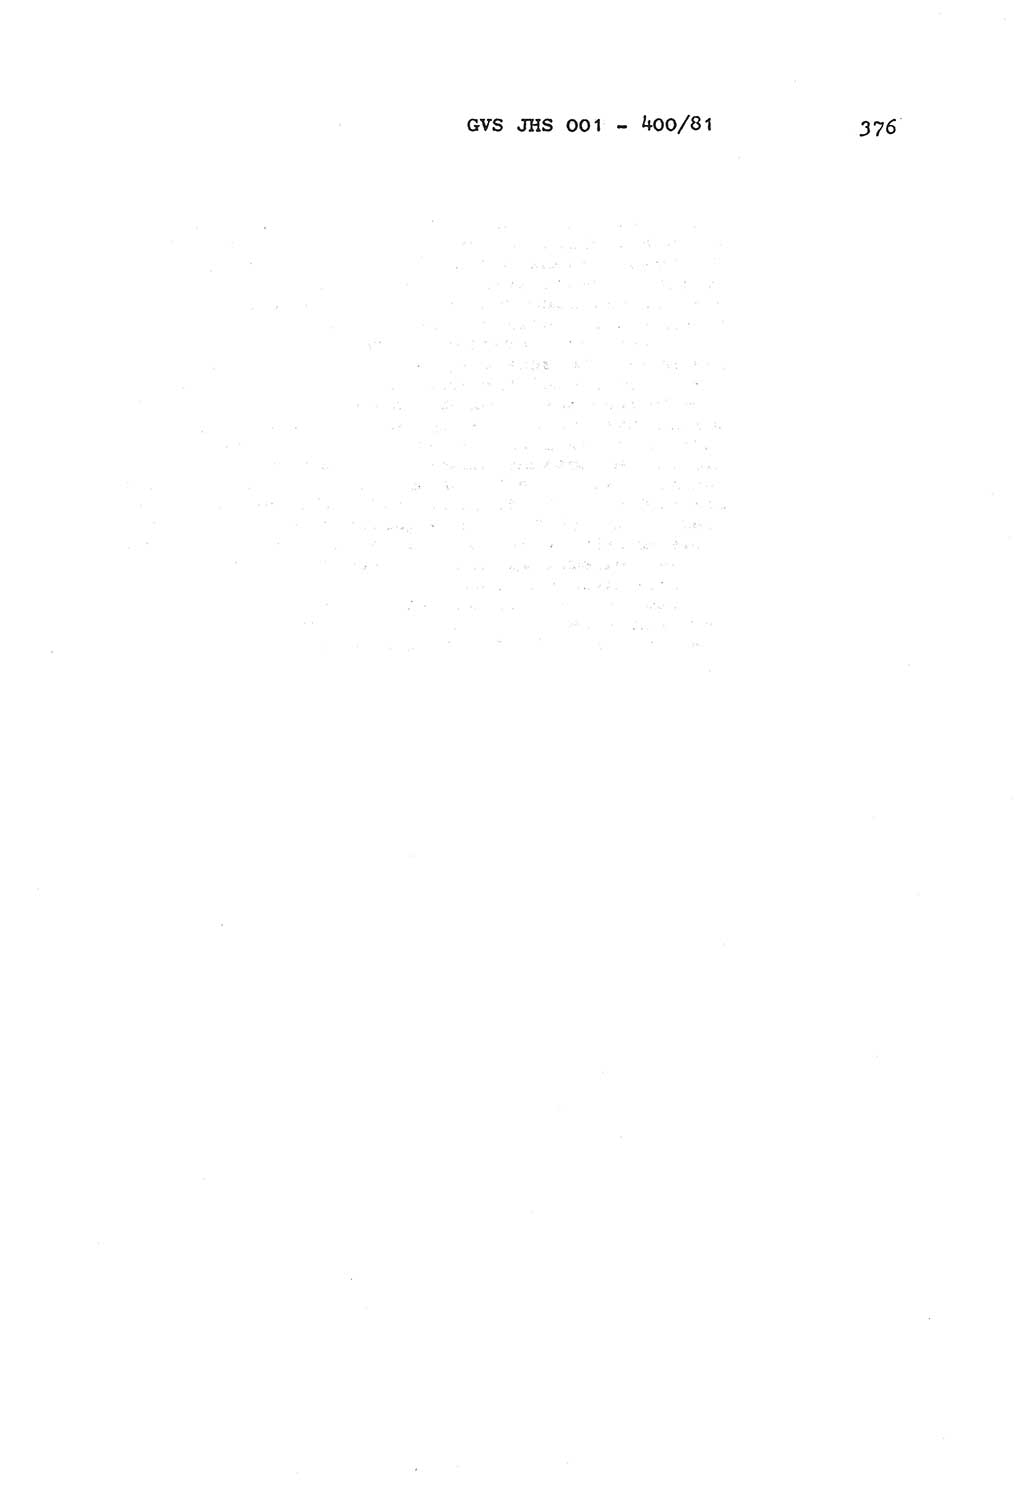 Wörterbuch der politisch-operativen Arbeit, Ministerium für Staatssicherheit (MfS) [Deutsche Demokratische Republik (DDR)], Juristische Hochschule (JHS), Geheime Verschlußsache (GVS) o001-400/81, Potsdam 1985, Blatt 376 (Wb. pol.-op. Arb. MfS DDR JHS GVS o001-400/81 1985, Bl. 376)